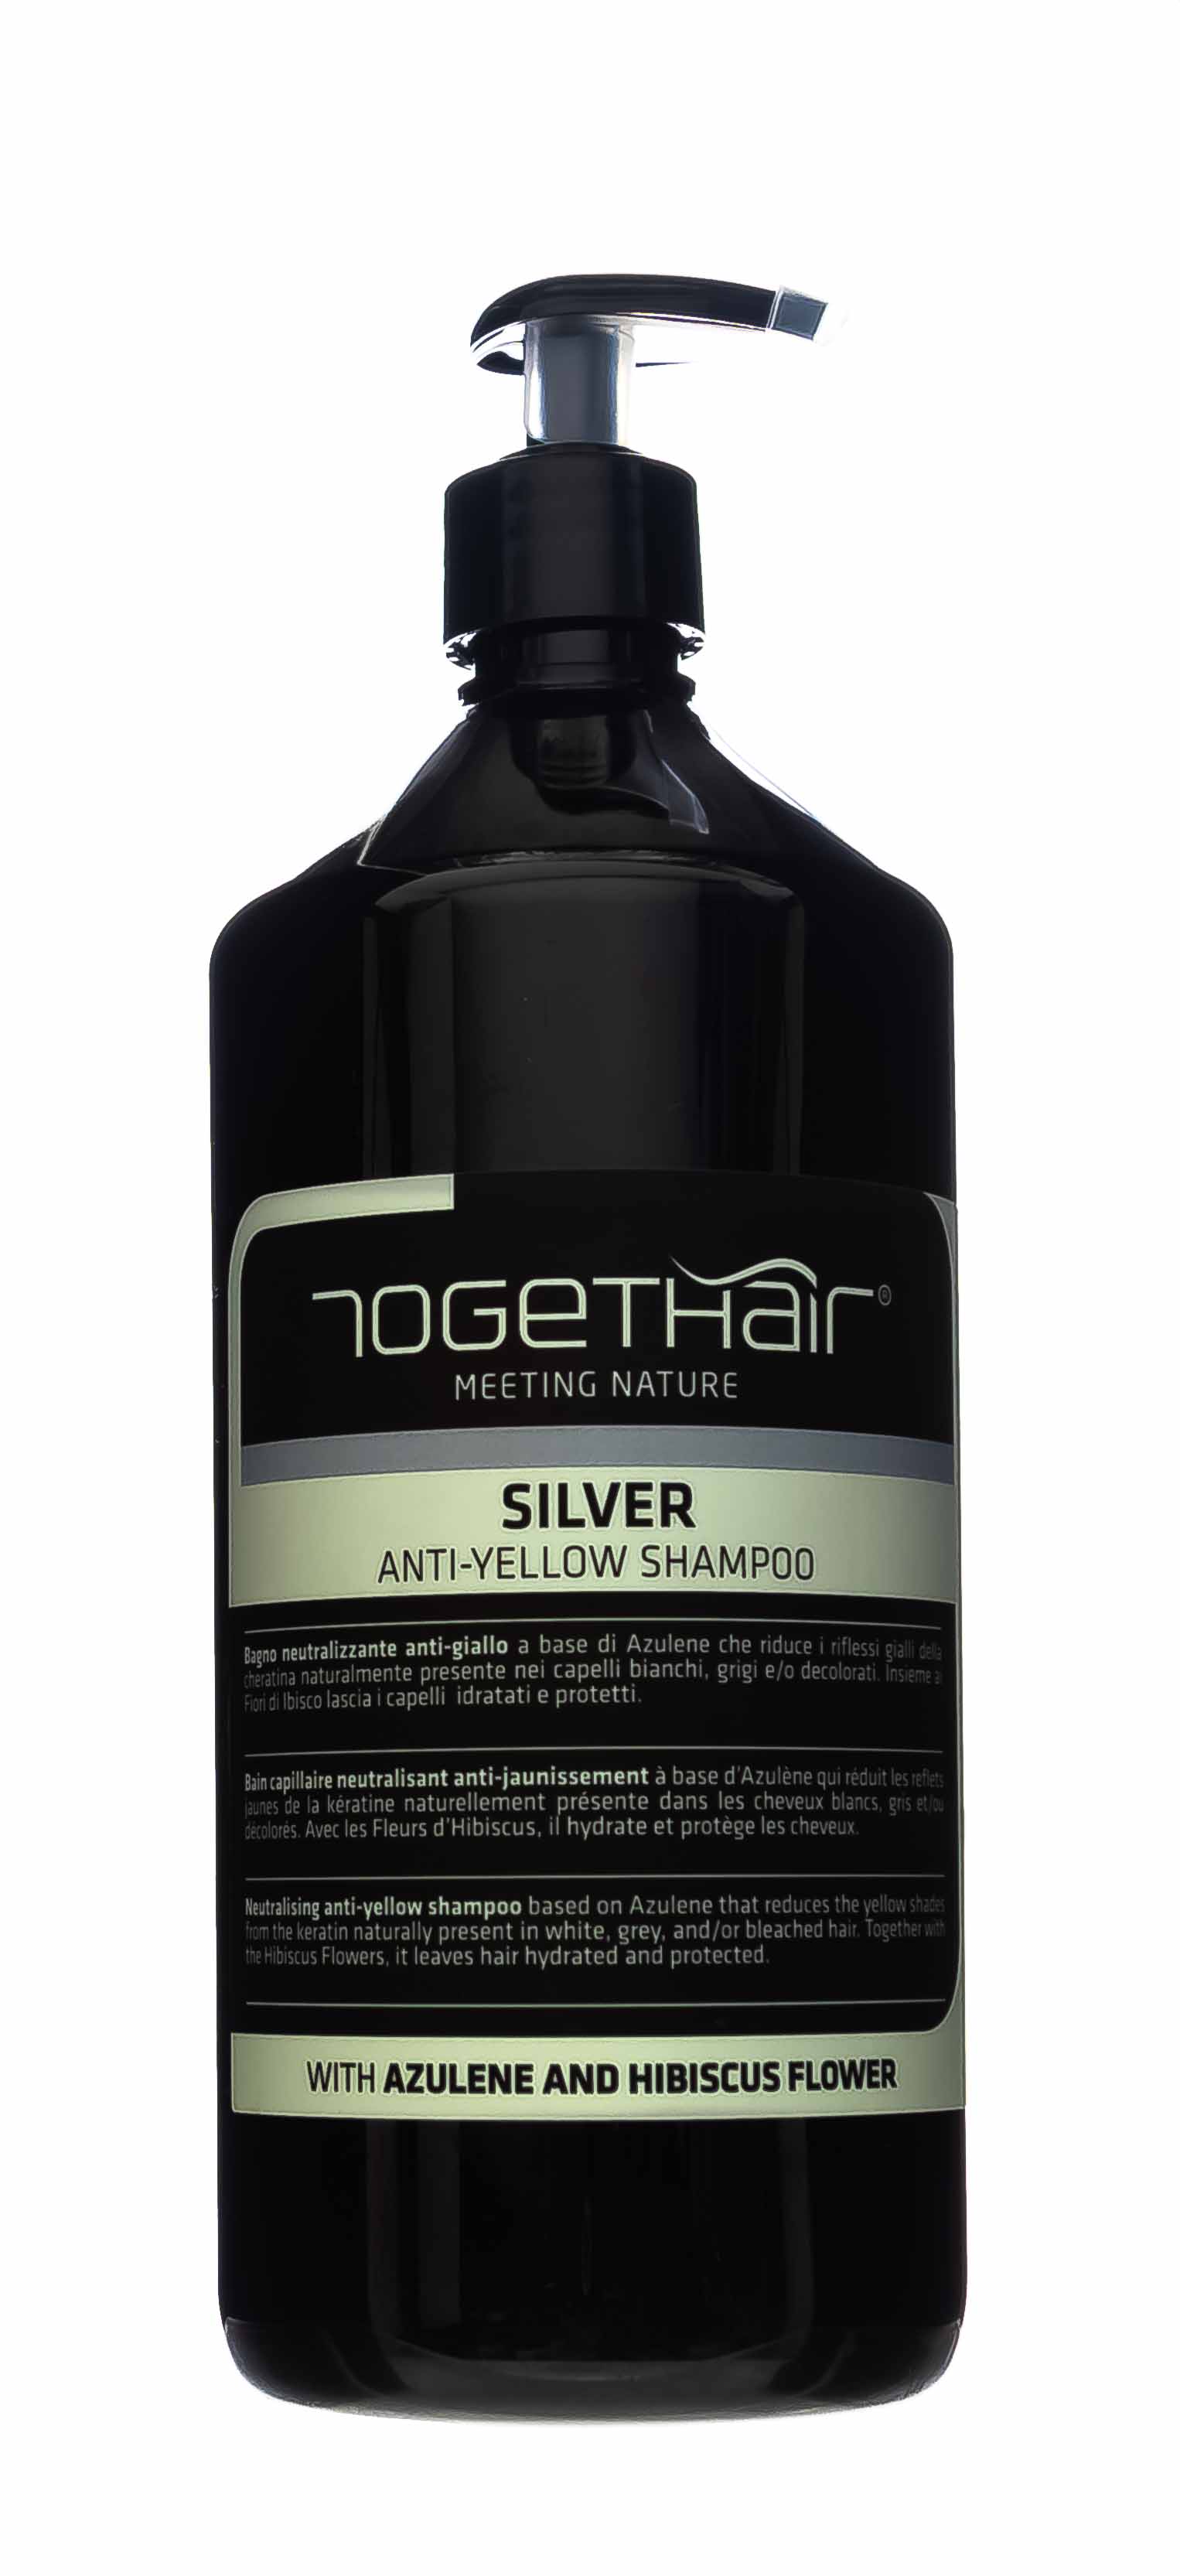 Togethair Шампунь против желтизны для осветленных и седых волос, 1000 мл (Togethair, Silver)